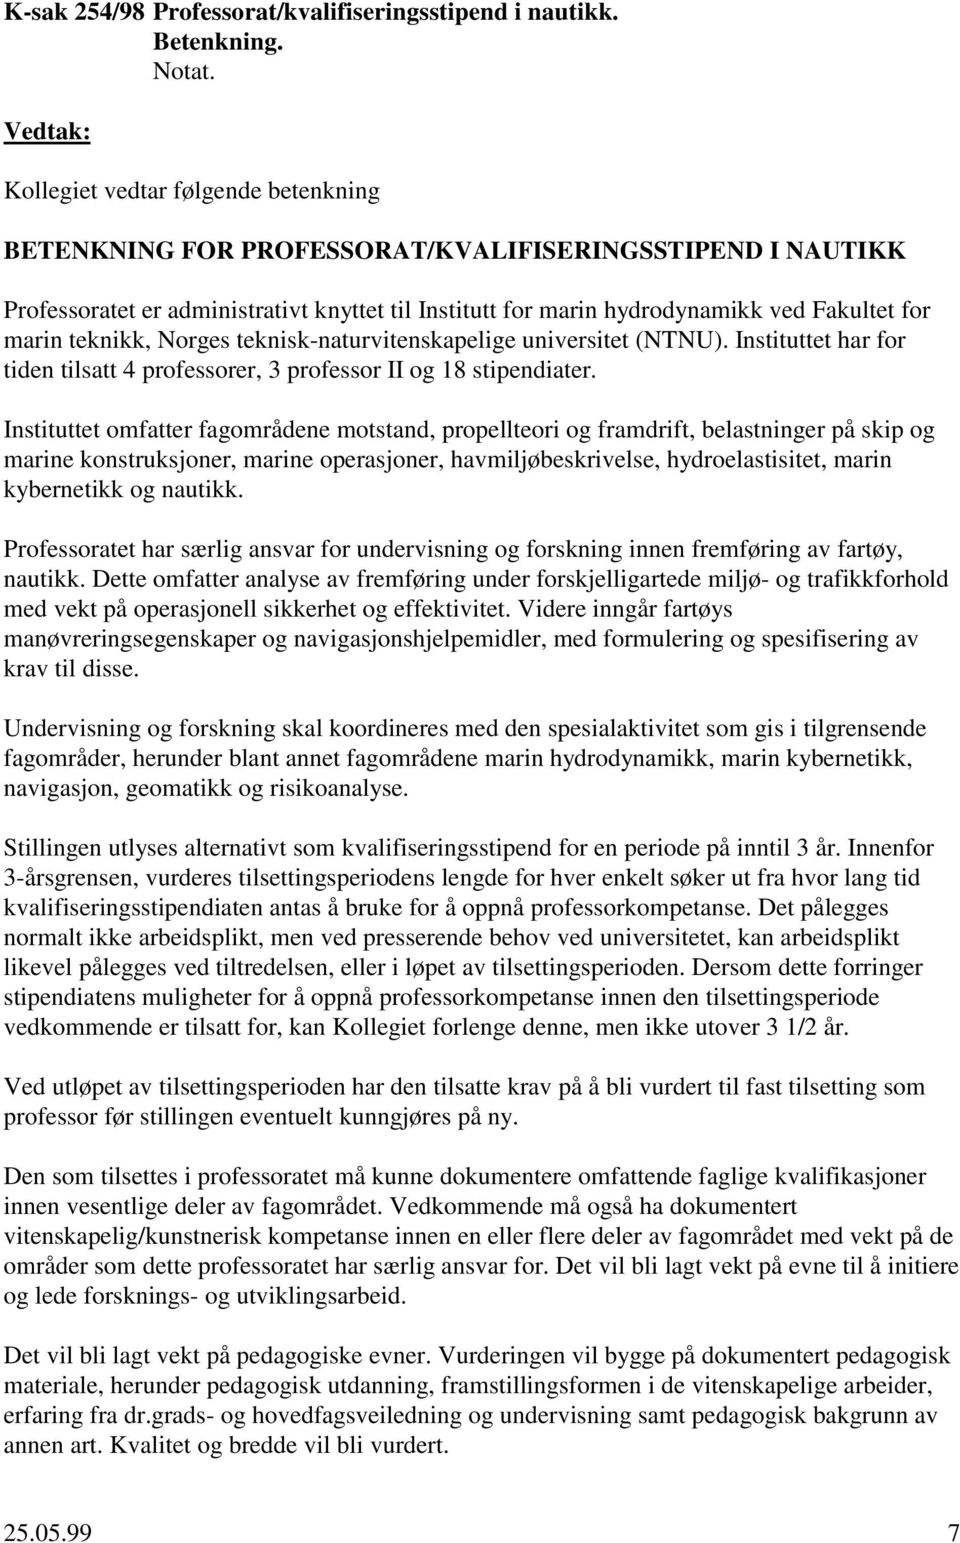 teknikk, Norges teknisk-naturvitenskapelige universitet (NTNU). Instituttet har for tiden tilsatt 4 professorer, 3 professor II og 18 stipendiater.